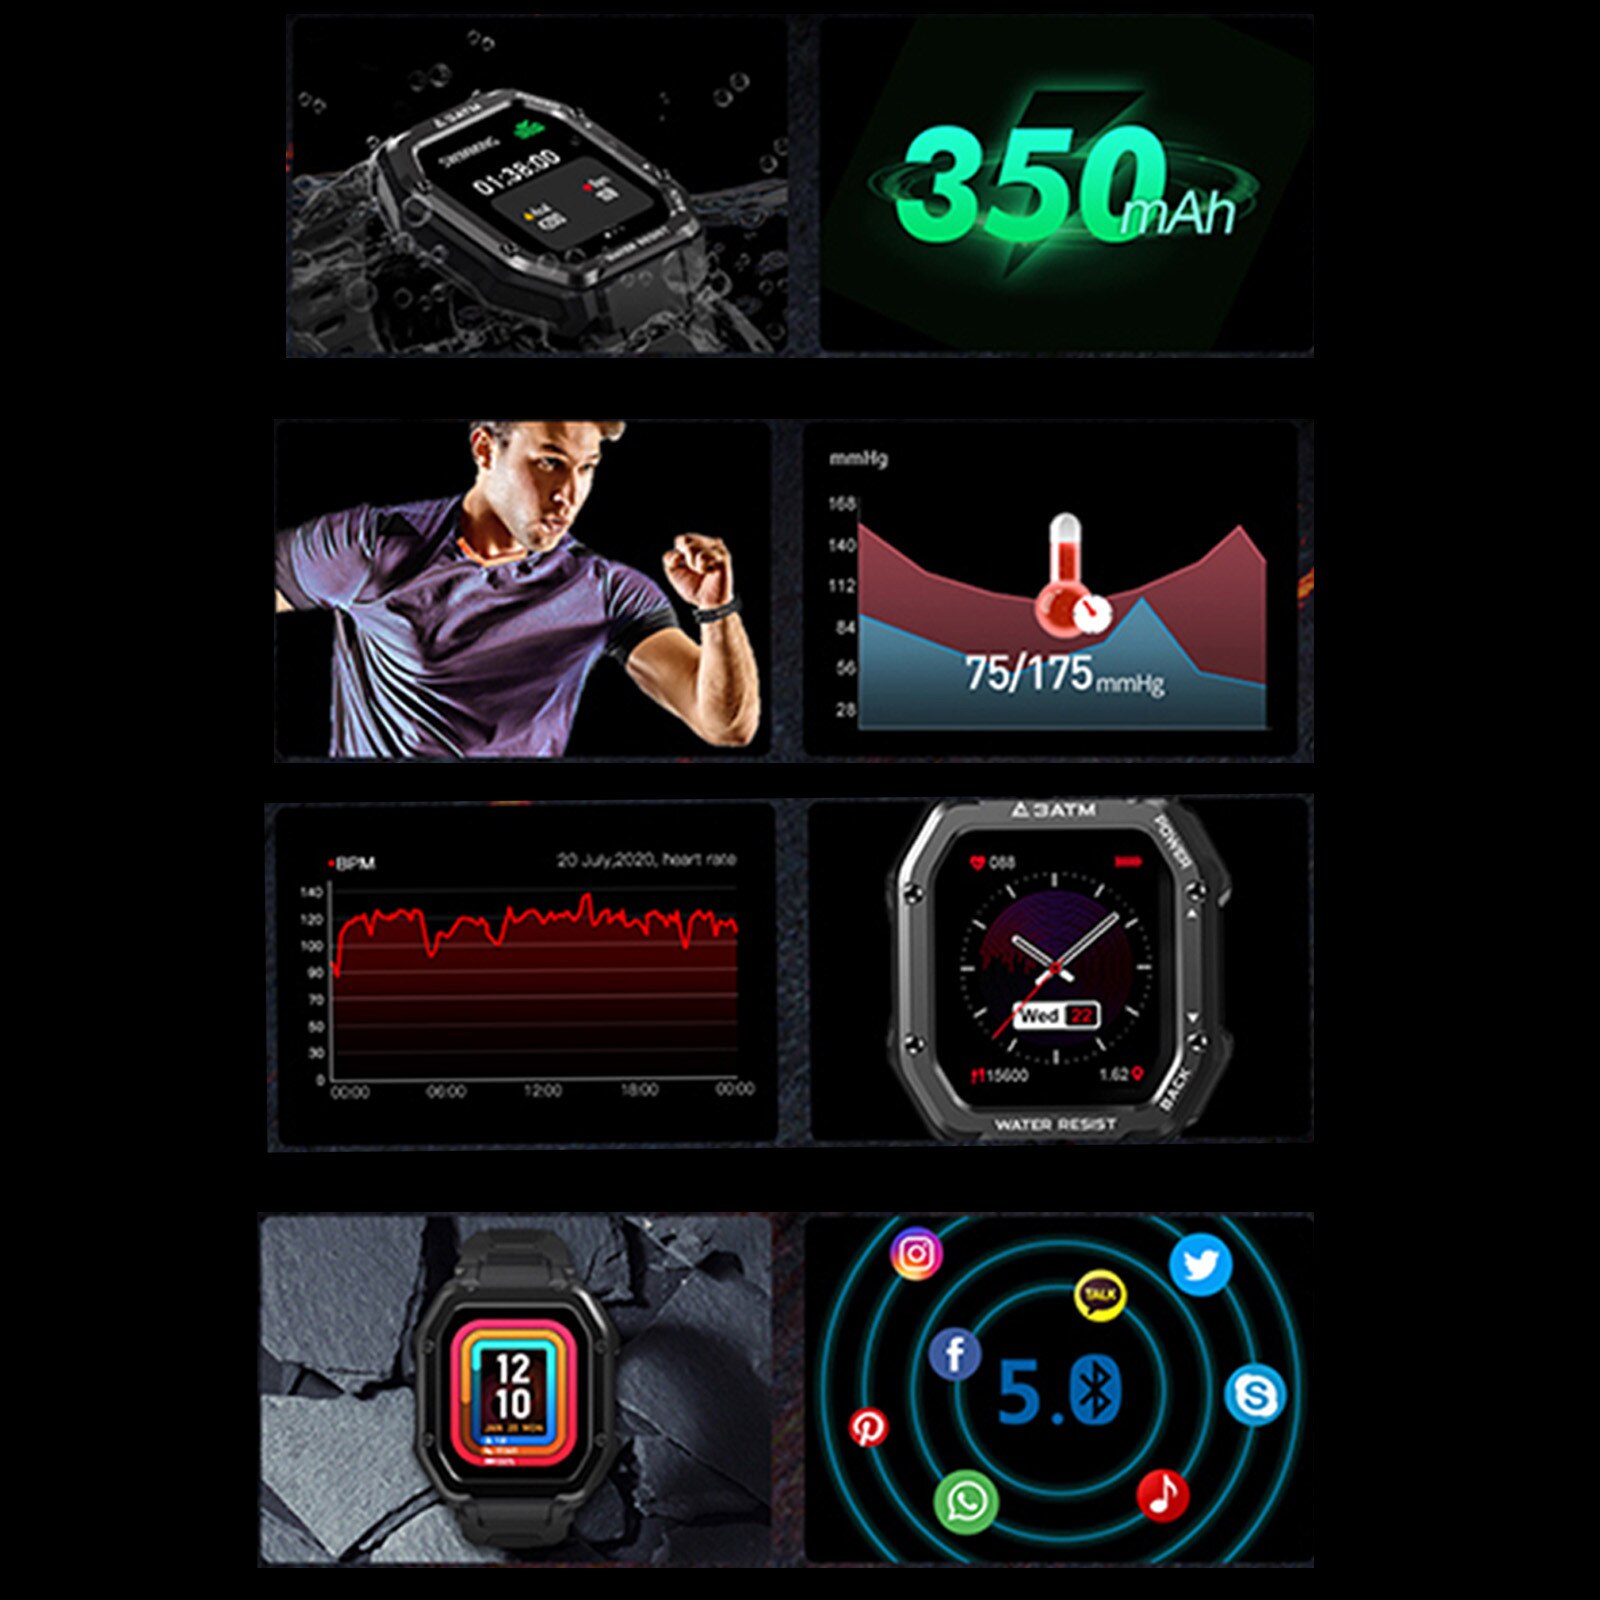 Smartwatch kospet rock watch för män utomhus sport vattentät fitness tracker blodtrycksmätare smart watch